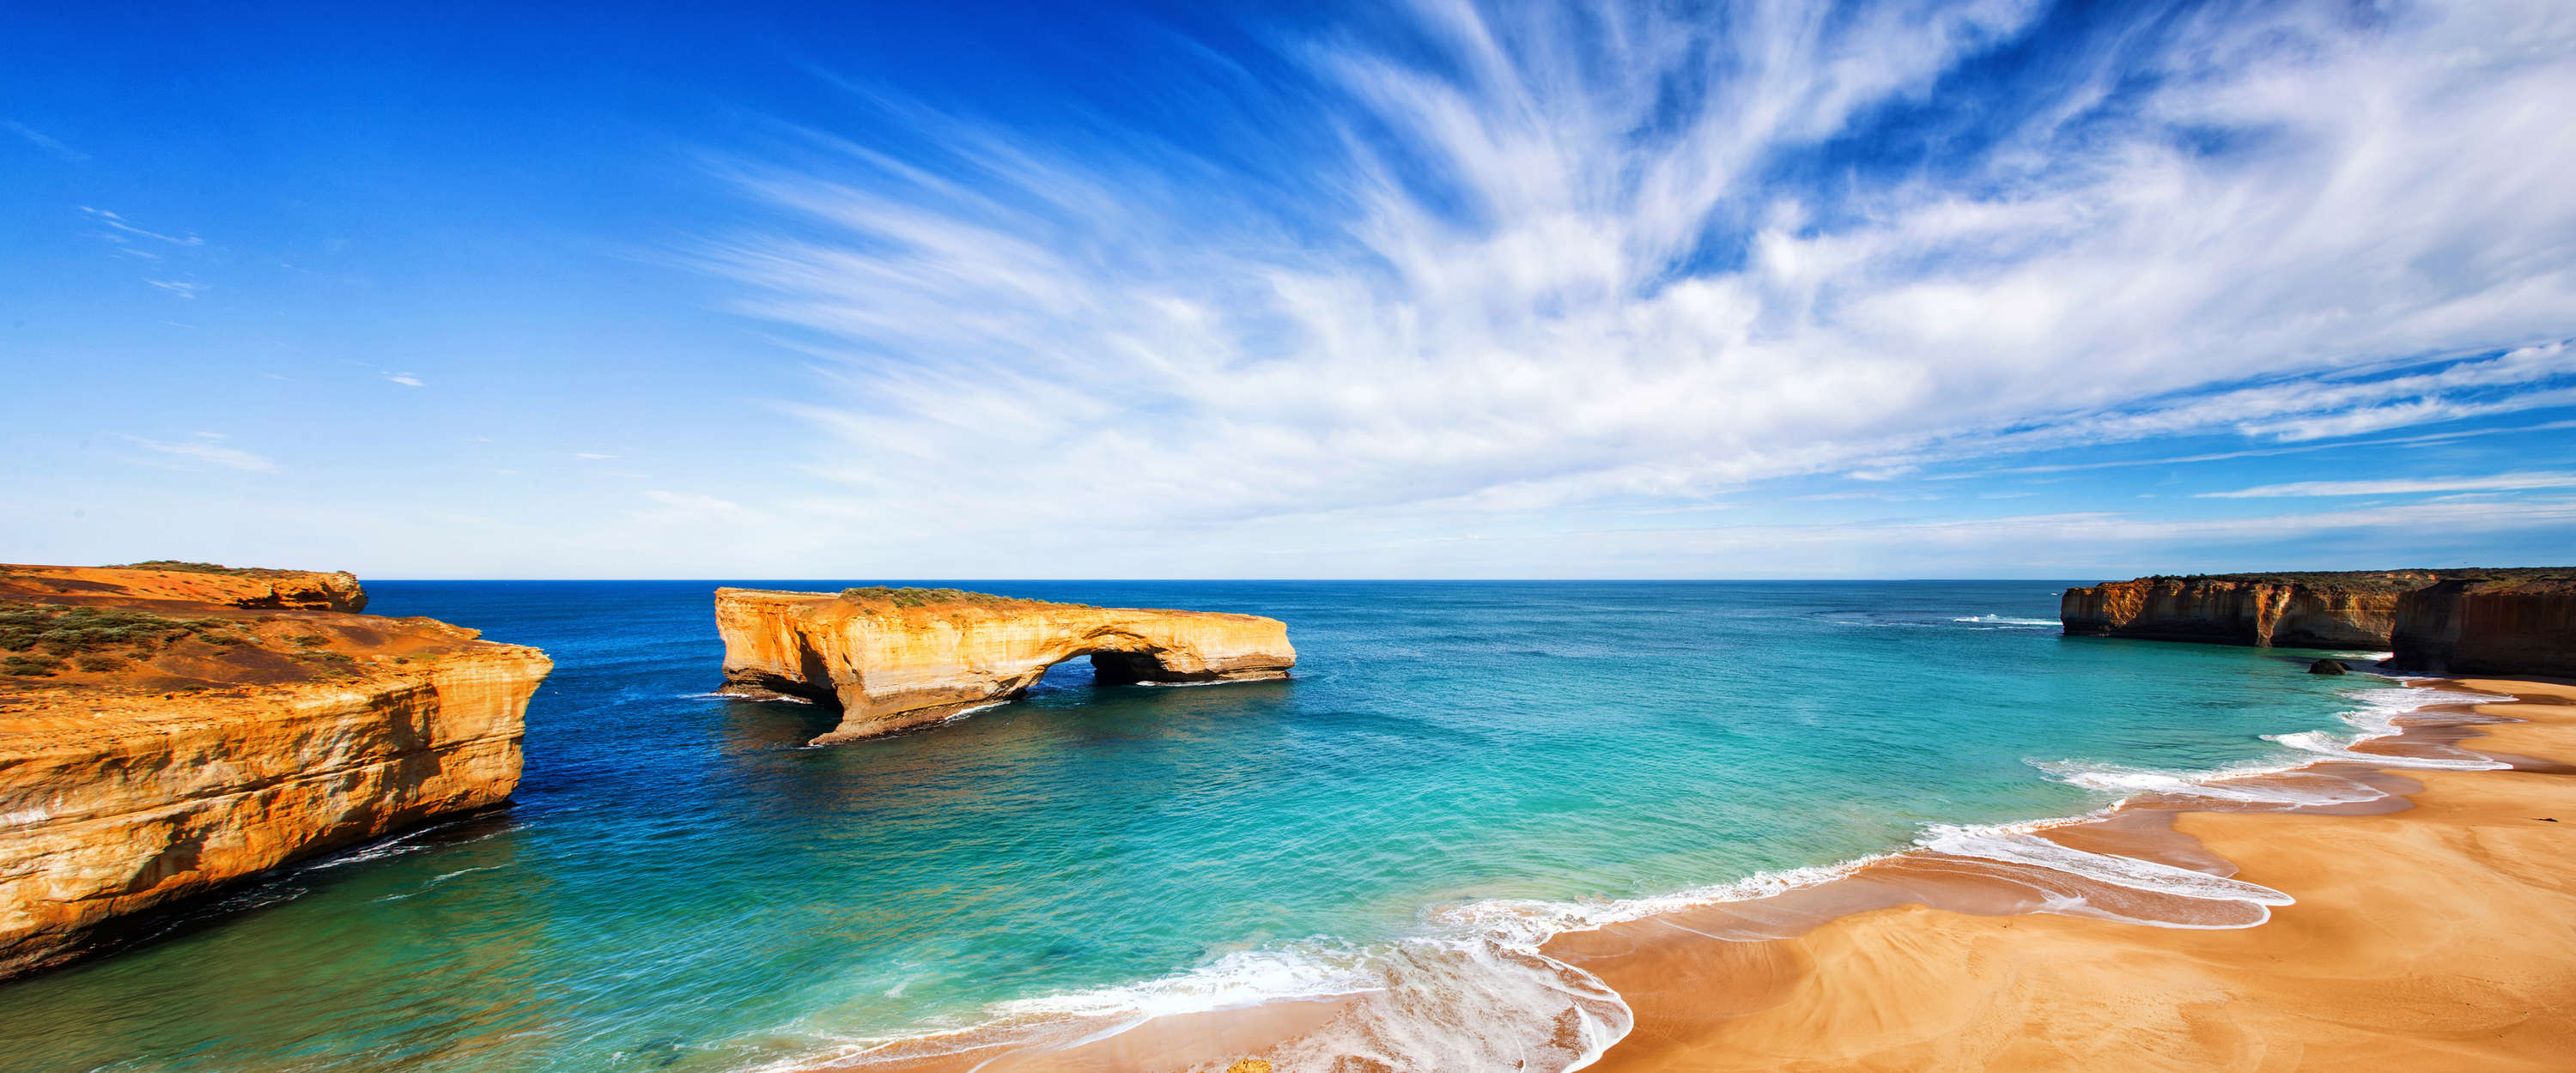             Sea coast rock cliffs, beach & blue sea mural
        